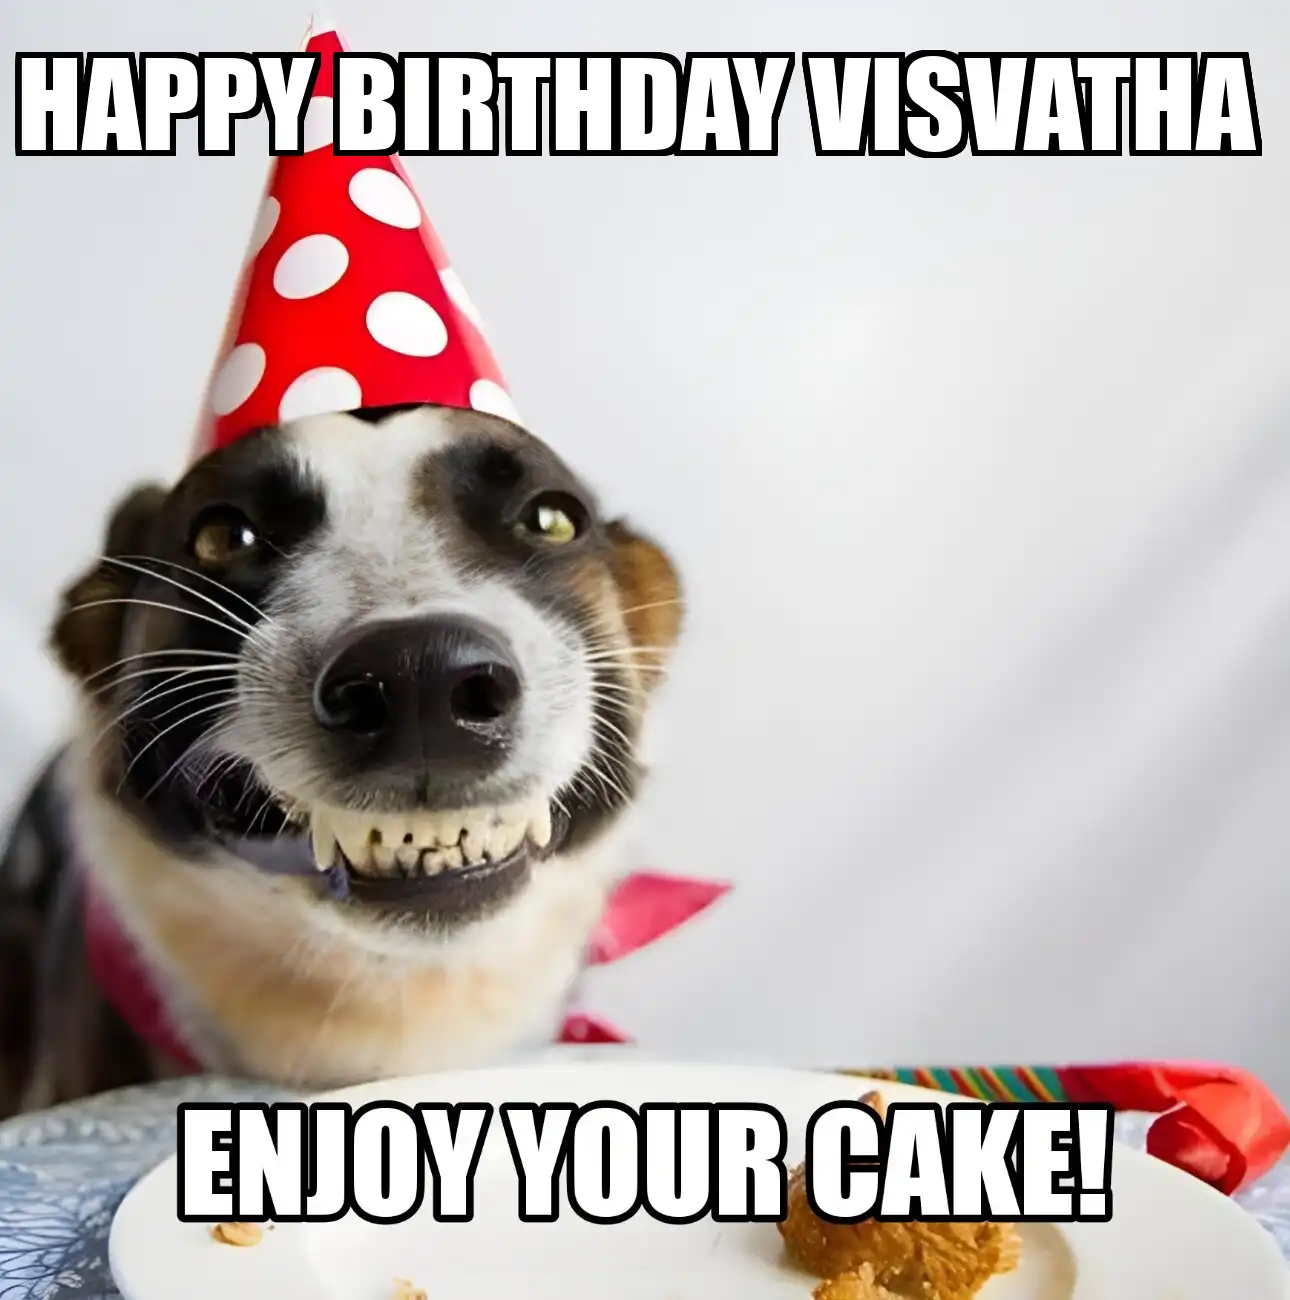 Happy Birthday Visvatha Enjoy Your Cake Dog Meme